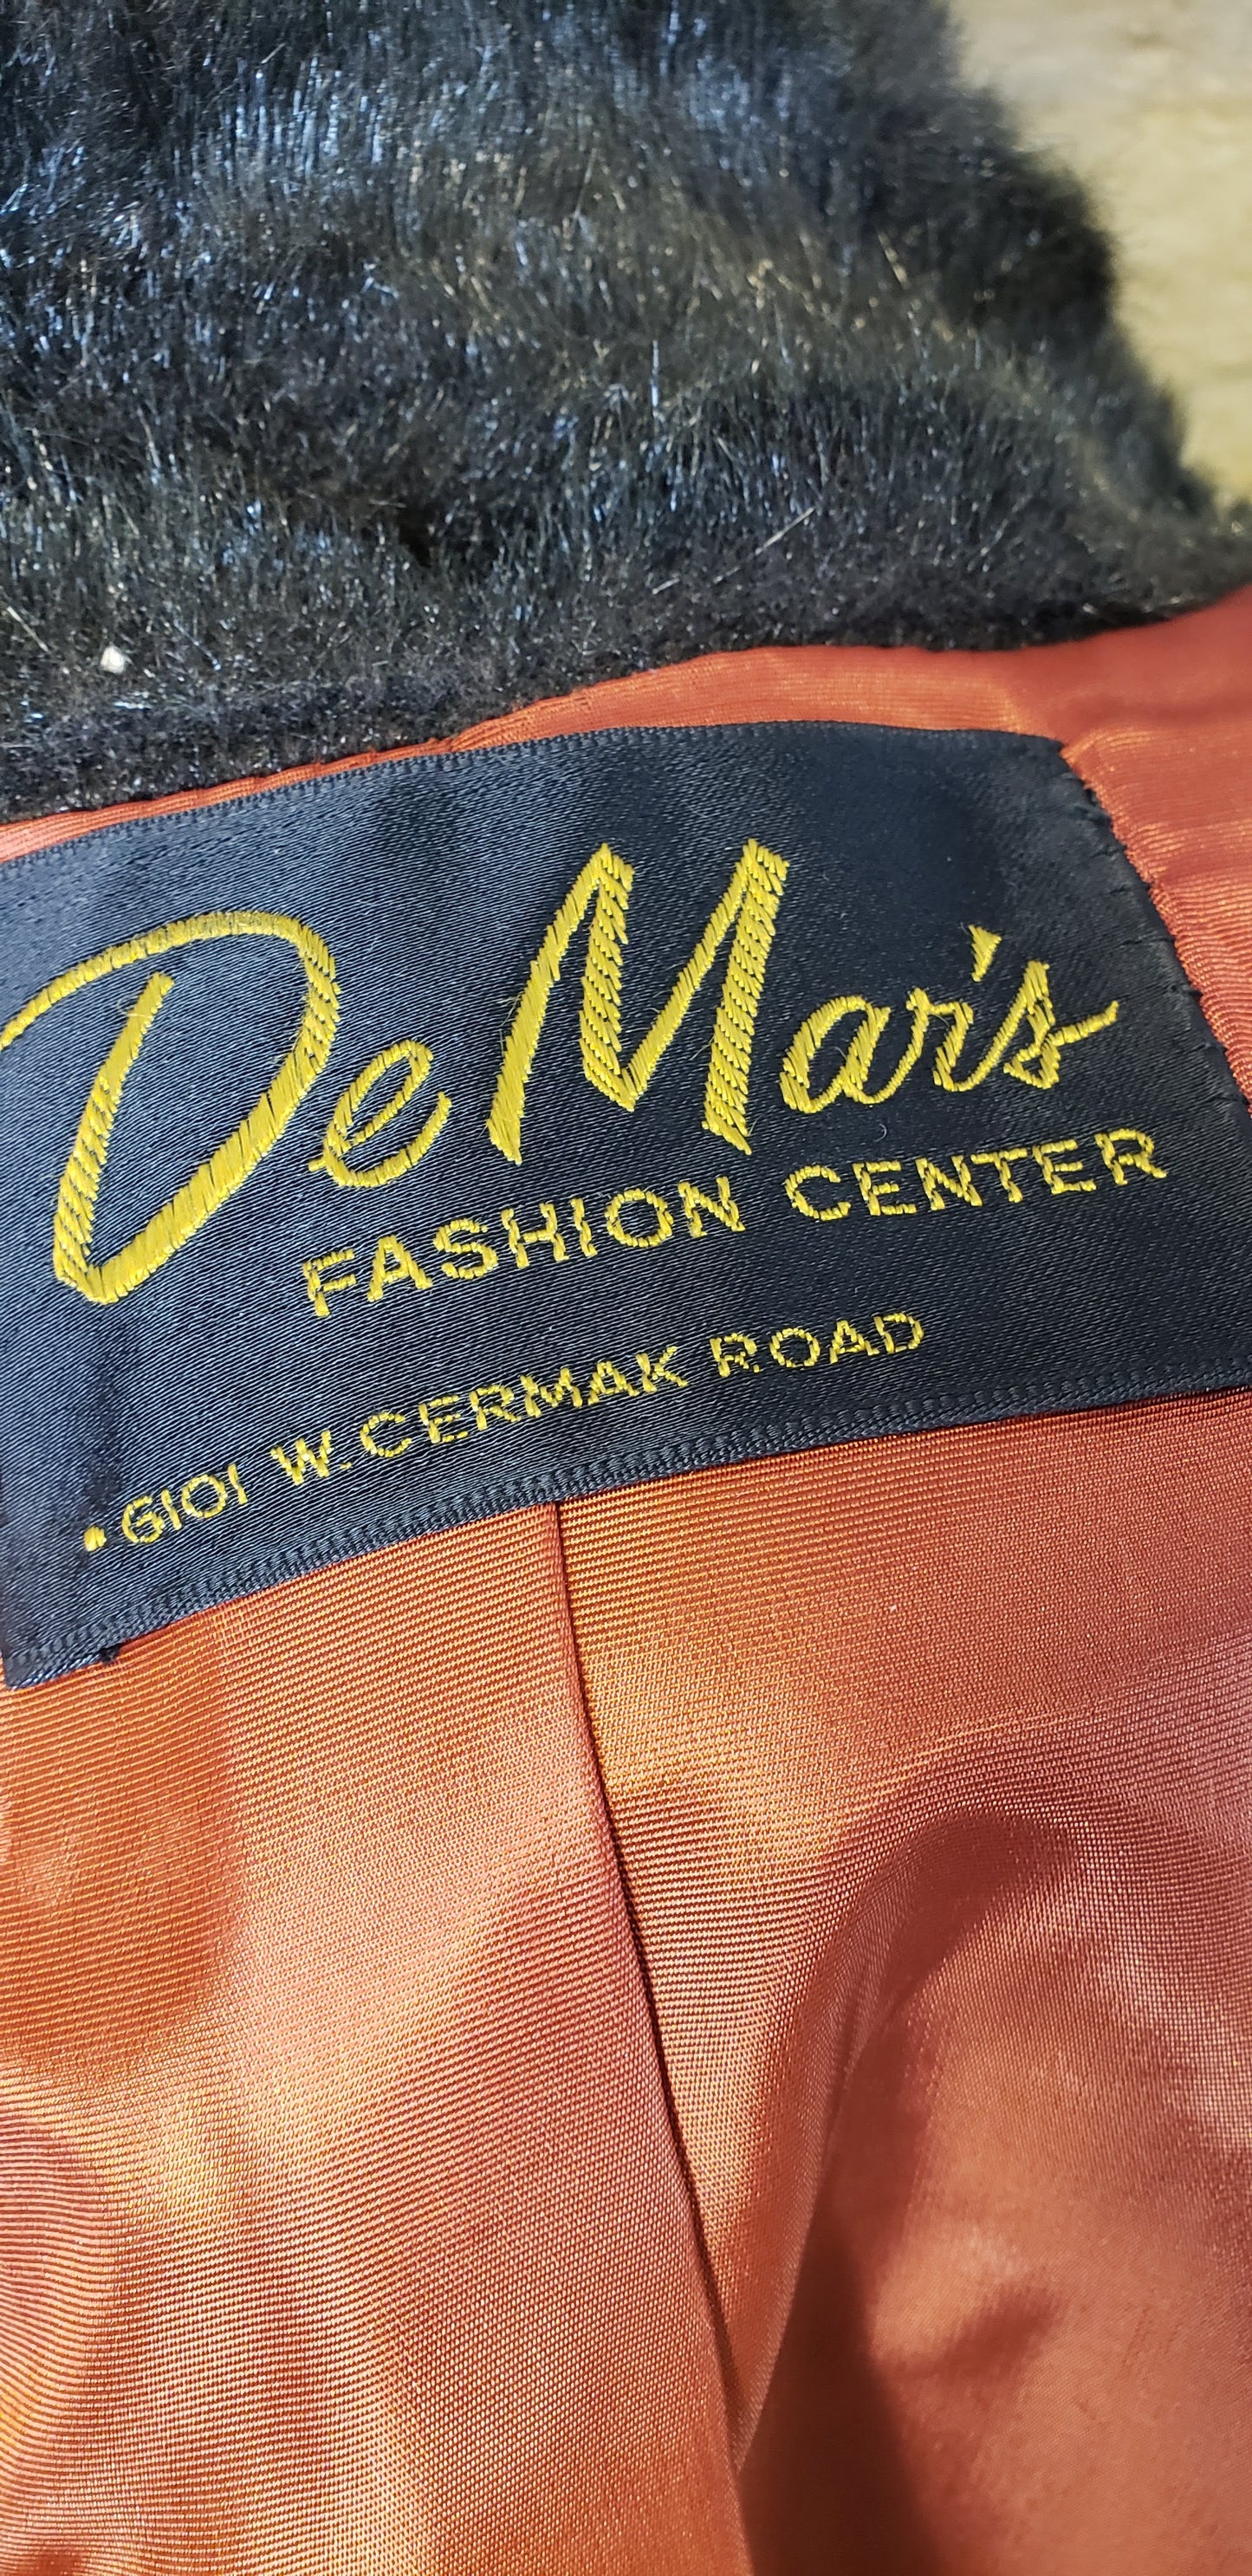 DeMar's Vintage Faux Fur Jacket